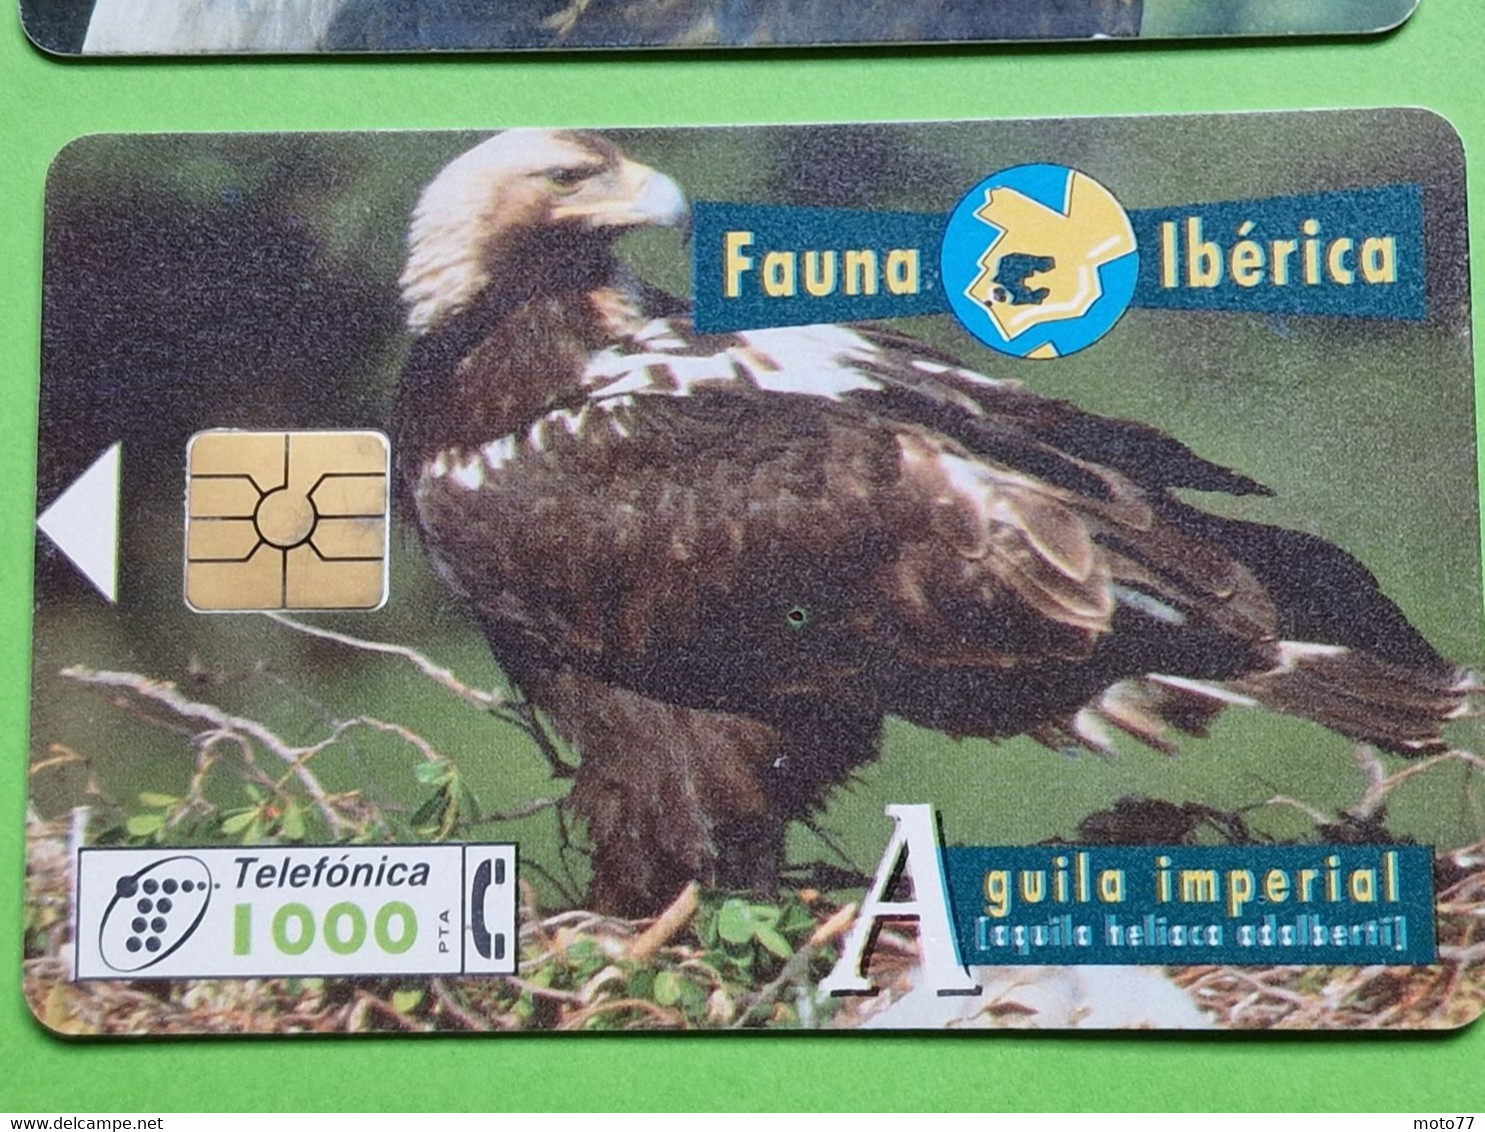 Lot 4 Cartes Téléphonique VIDE - Cabine Téléphone - AIGLE Oiseau Rapace - 1996 1998 - Águilas & Aves De Presa